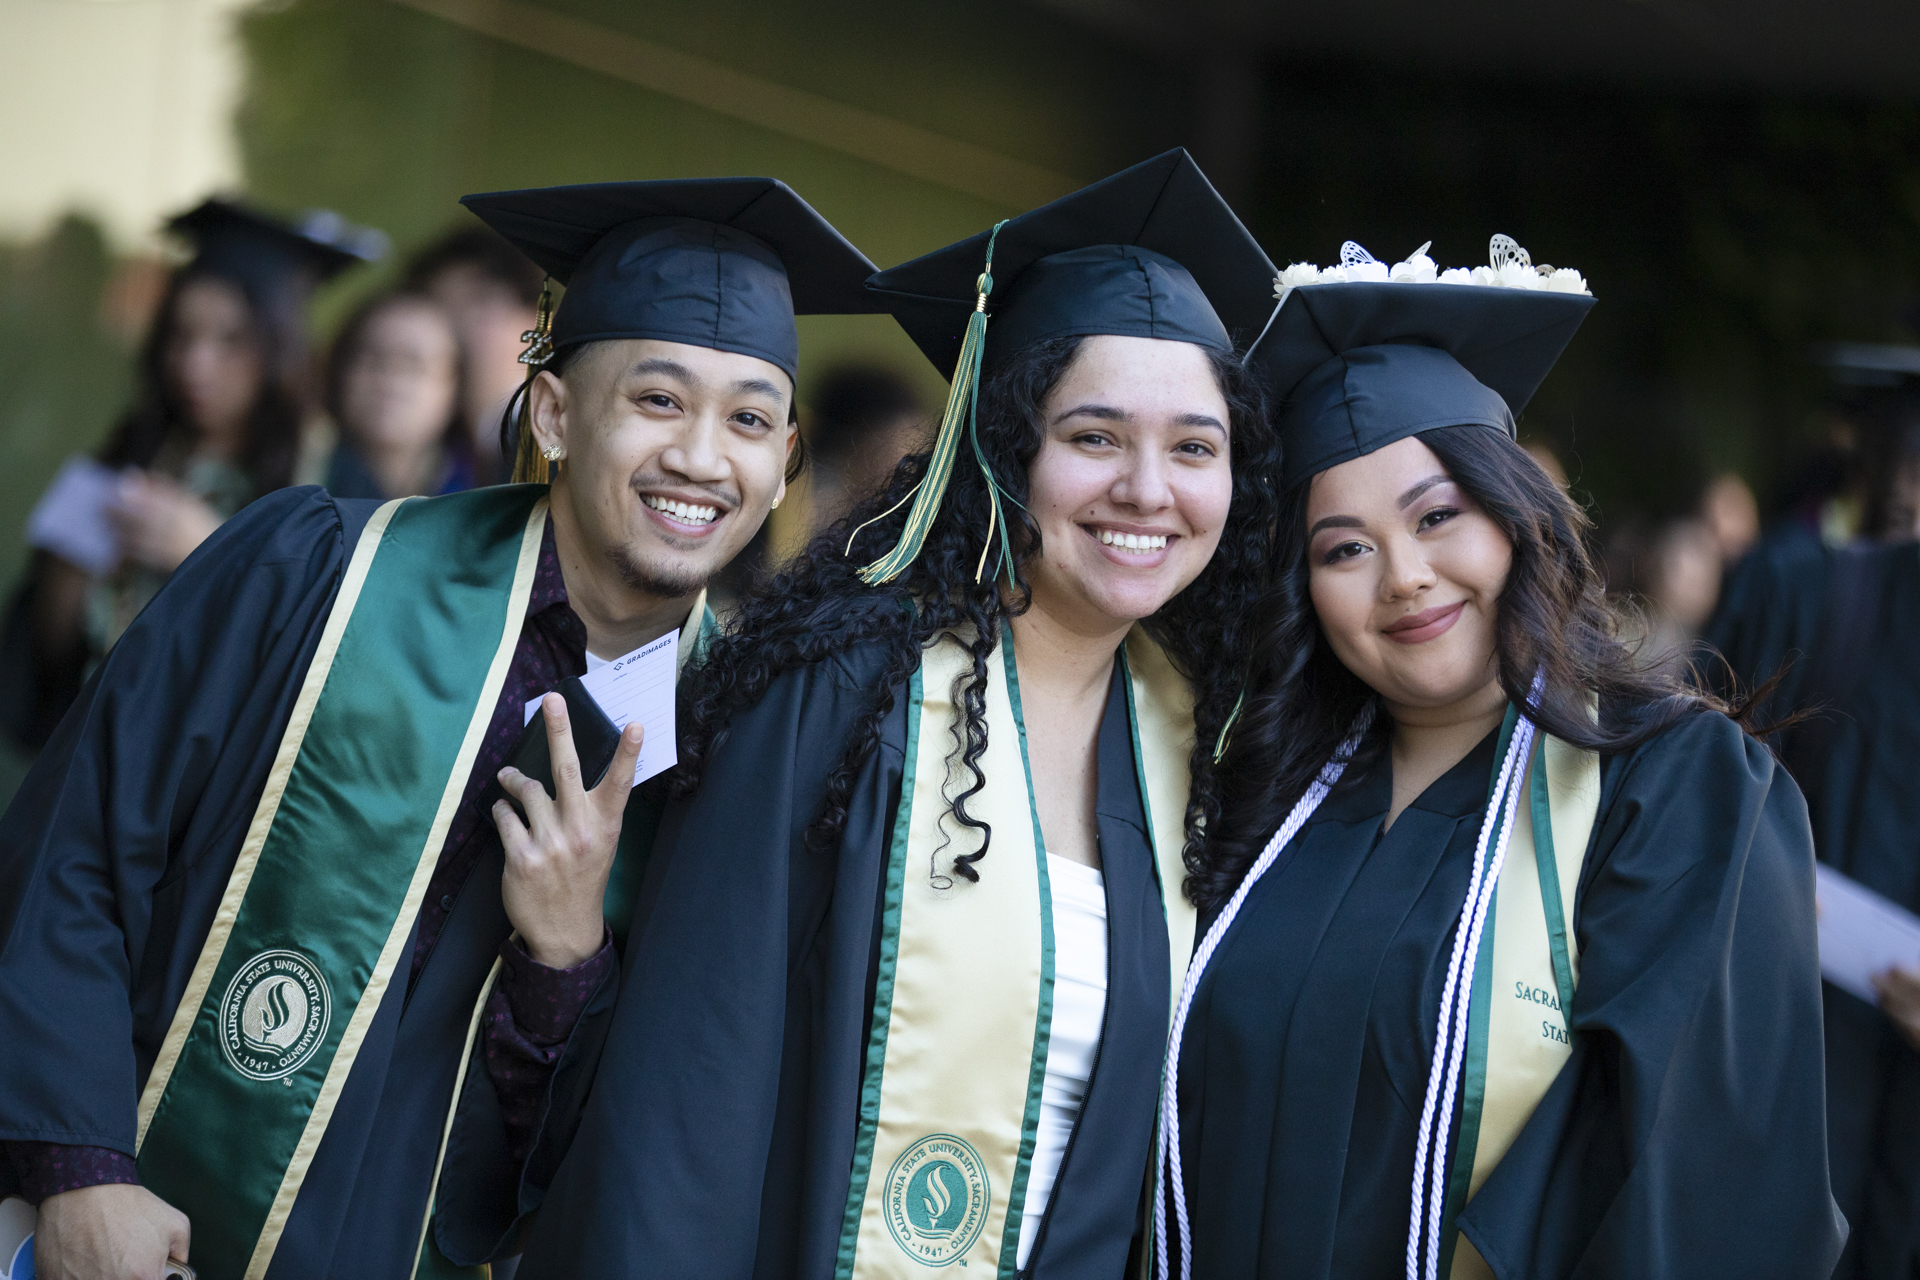 Three graduating students, in academic regalia, indoors, smiling